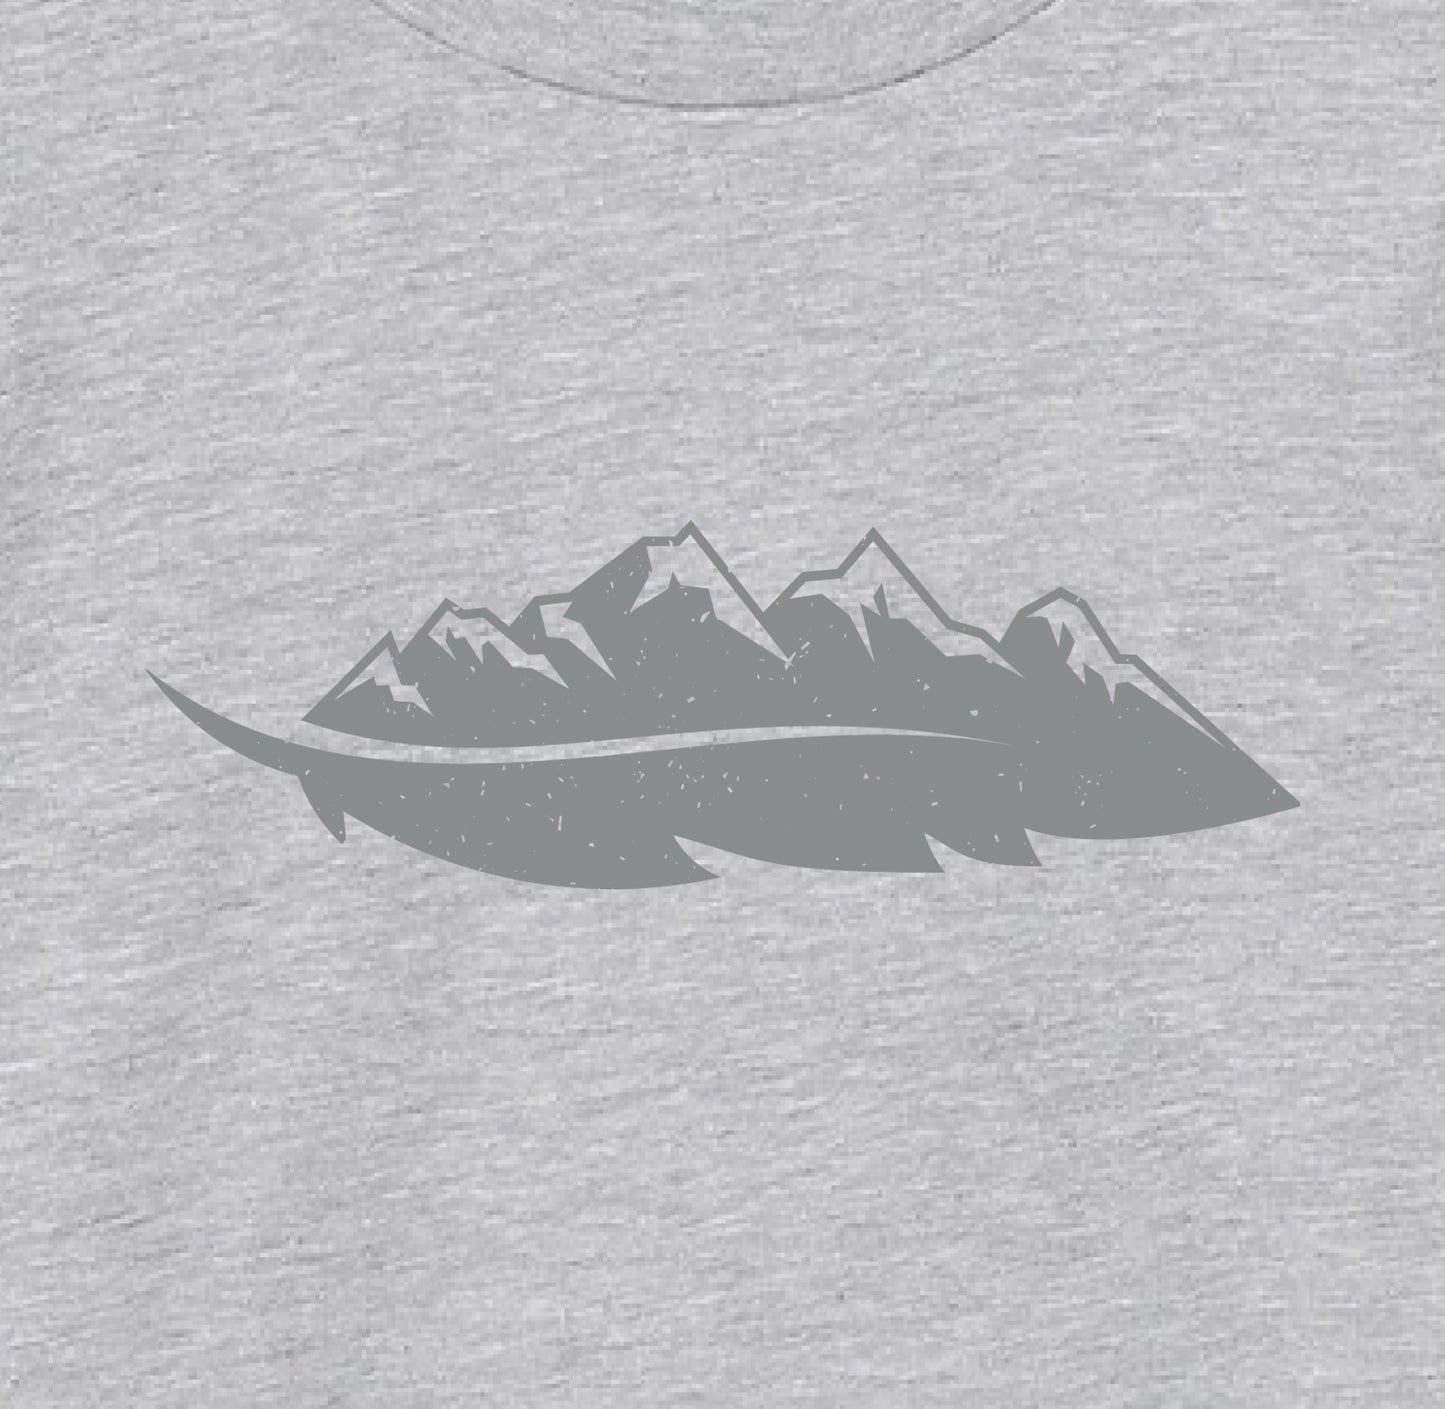 children's shirt from cazakidz - feather mountain t-shirt artwork